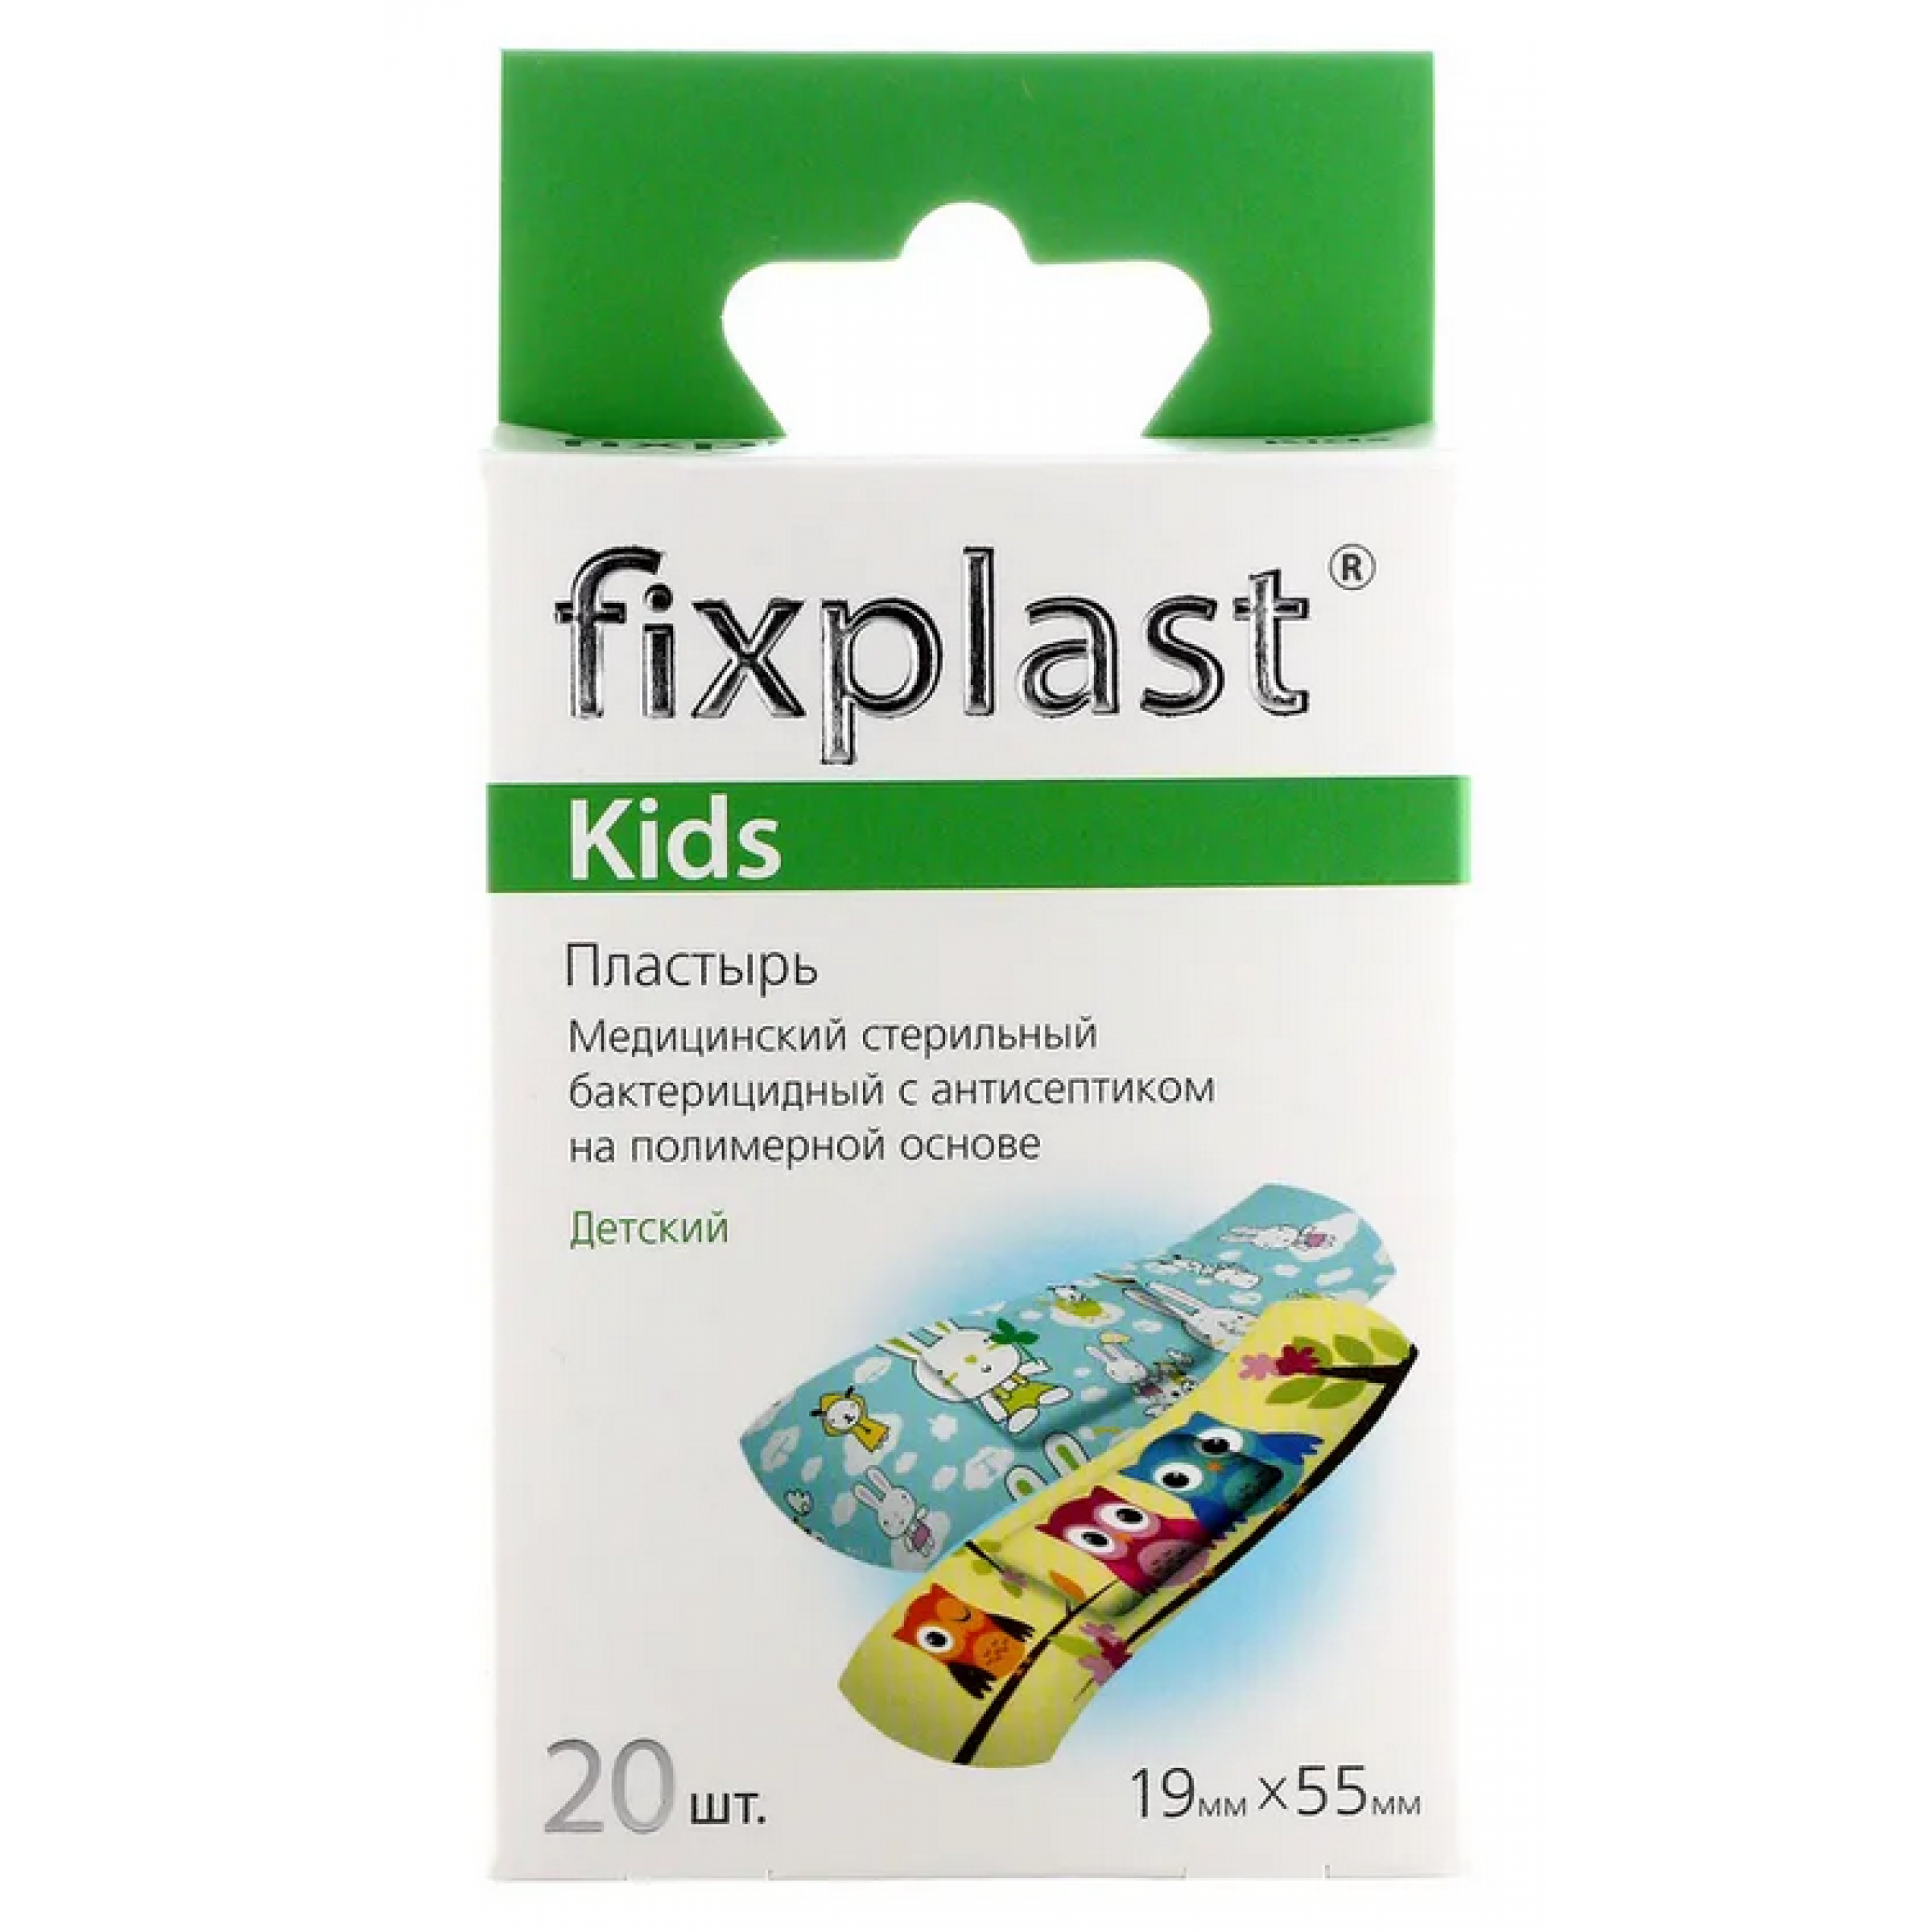 Пластырь стерильный бактерицидный Fixplast Kids на полимерной основе с детским рисунком 1,9х5,5 см 20 шт